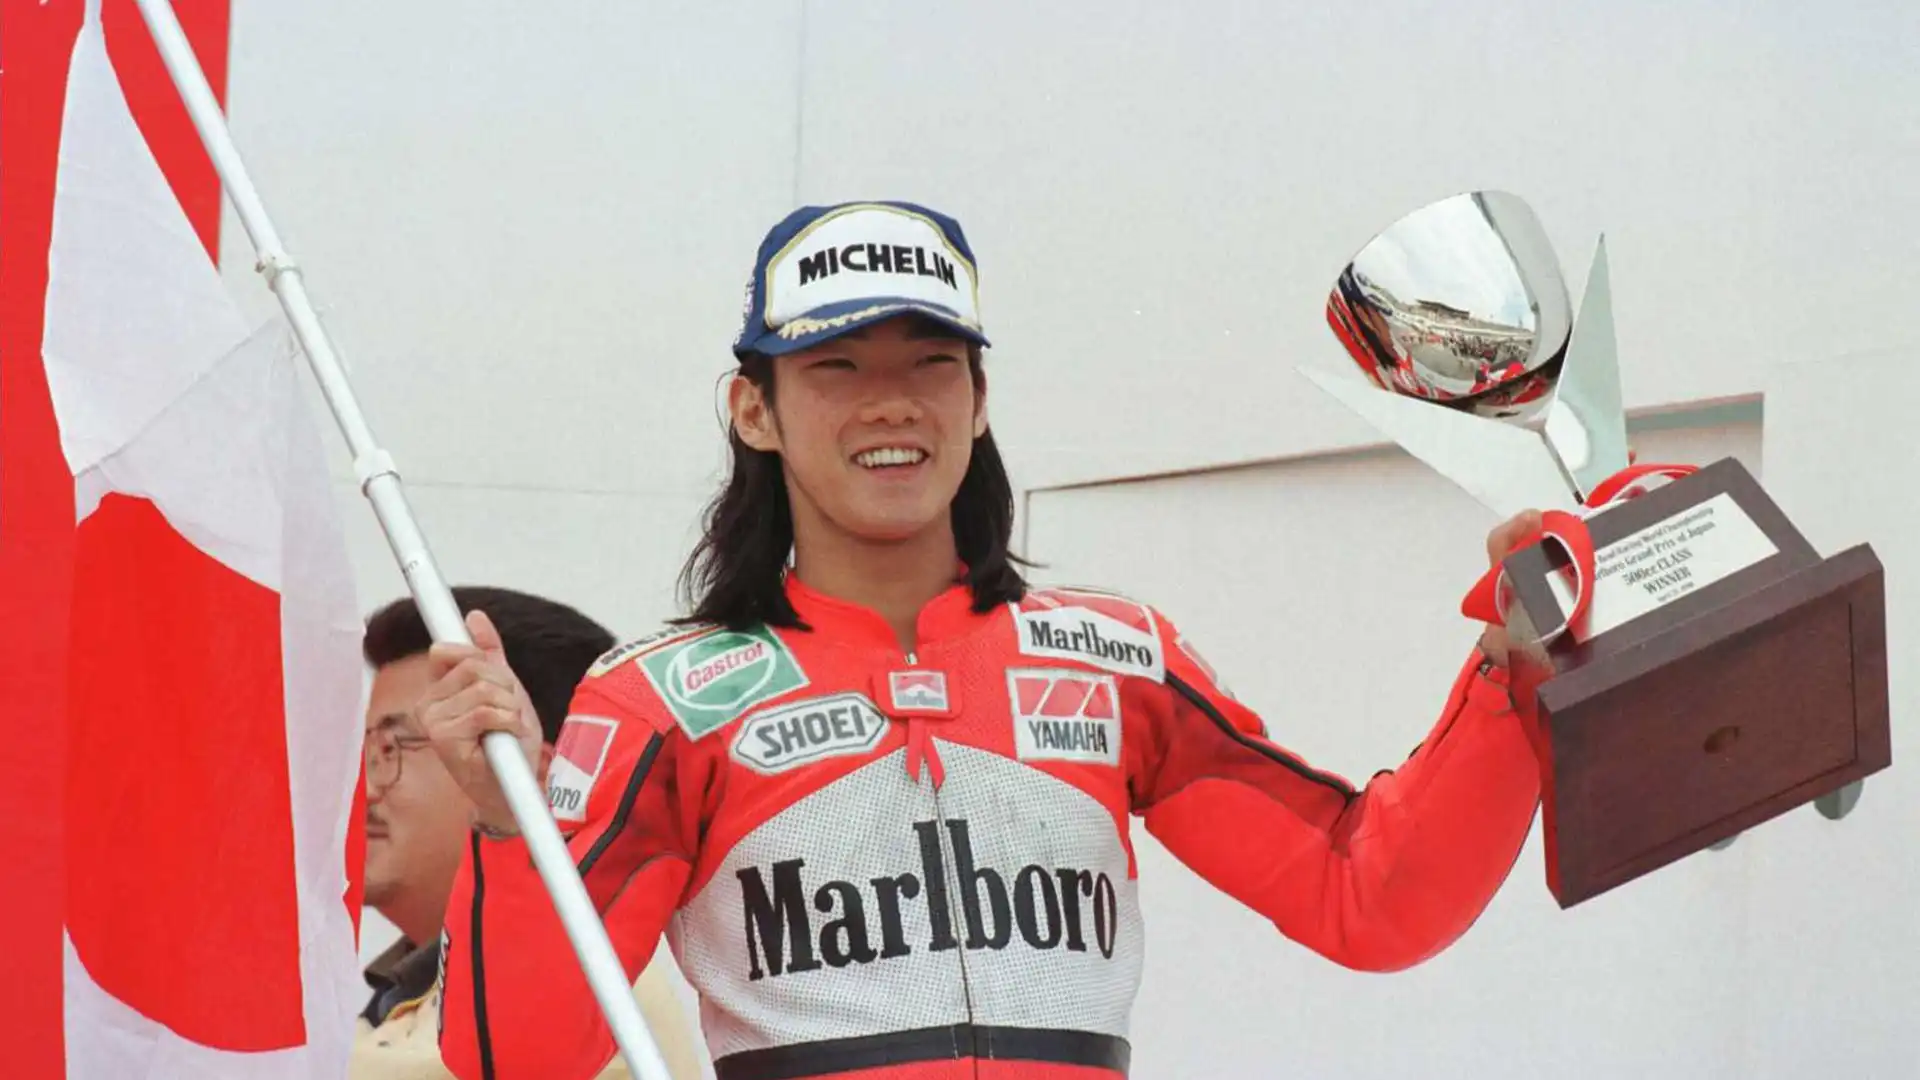 Norifumi Abe: soprannominato Norick, ha ispirato tanti piloti per la sua aggressività e la sua velocità in sella alla Yamaha